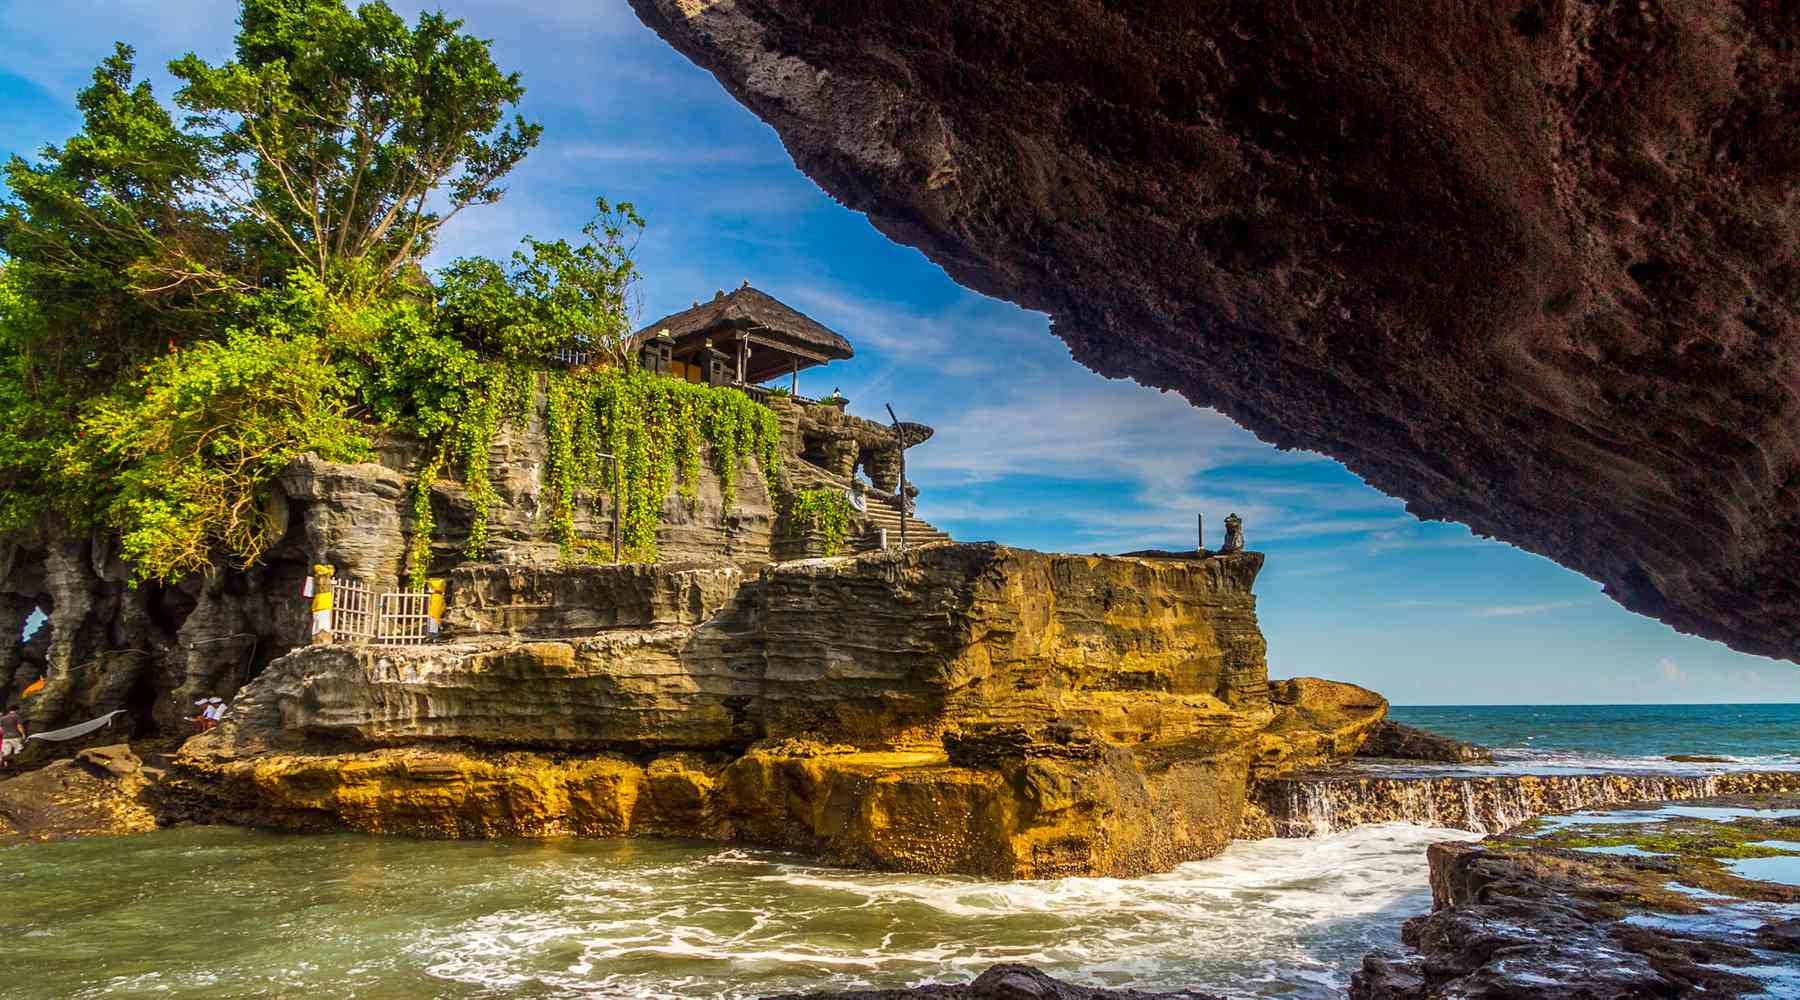 Kinh nghiệm du lịch Bali tự túc từ A-Z năm 2022 - Local Bali